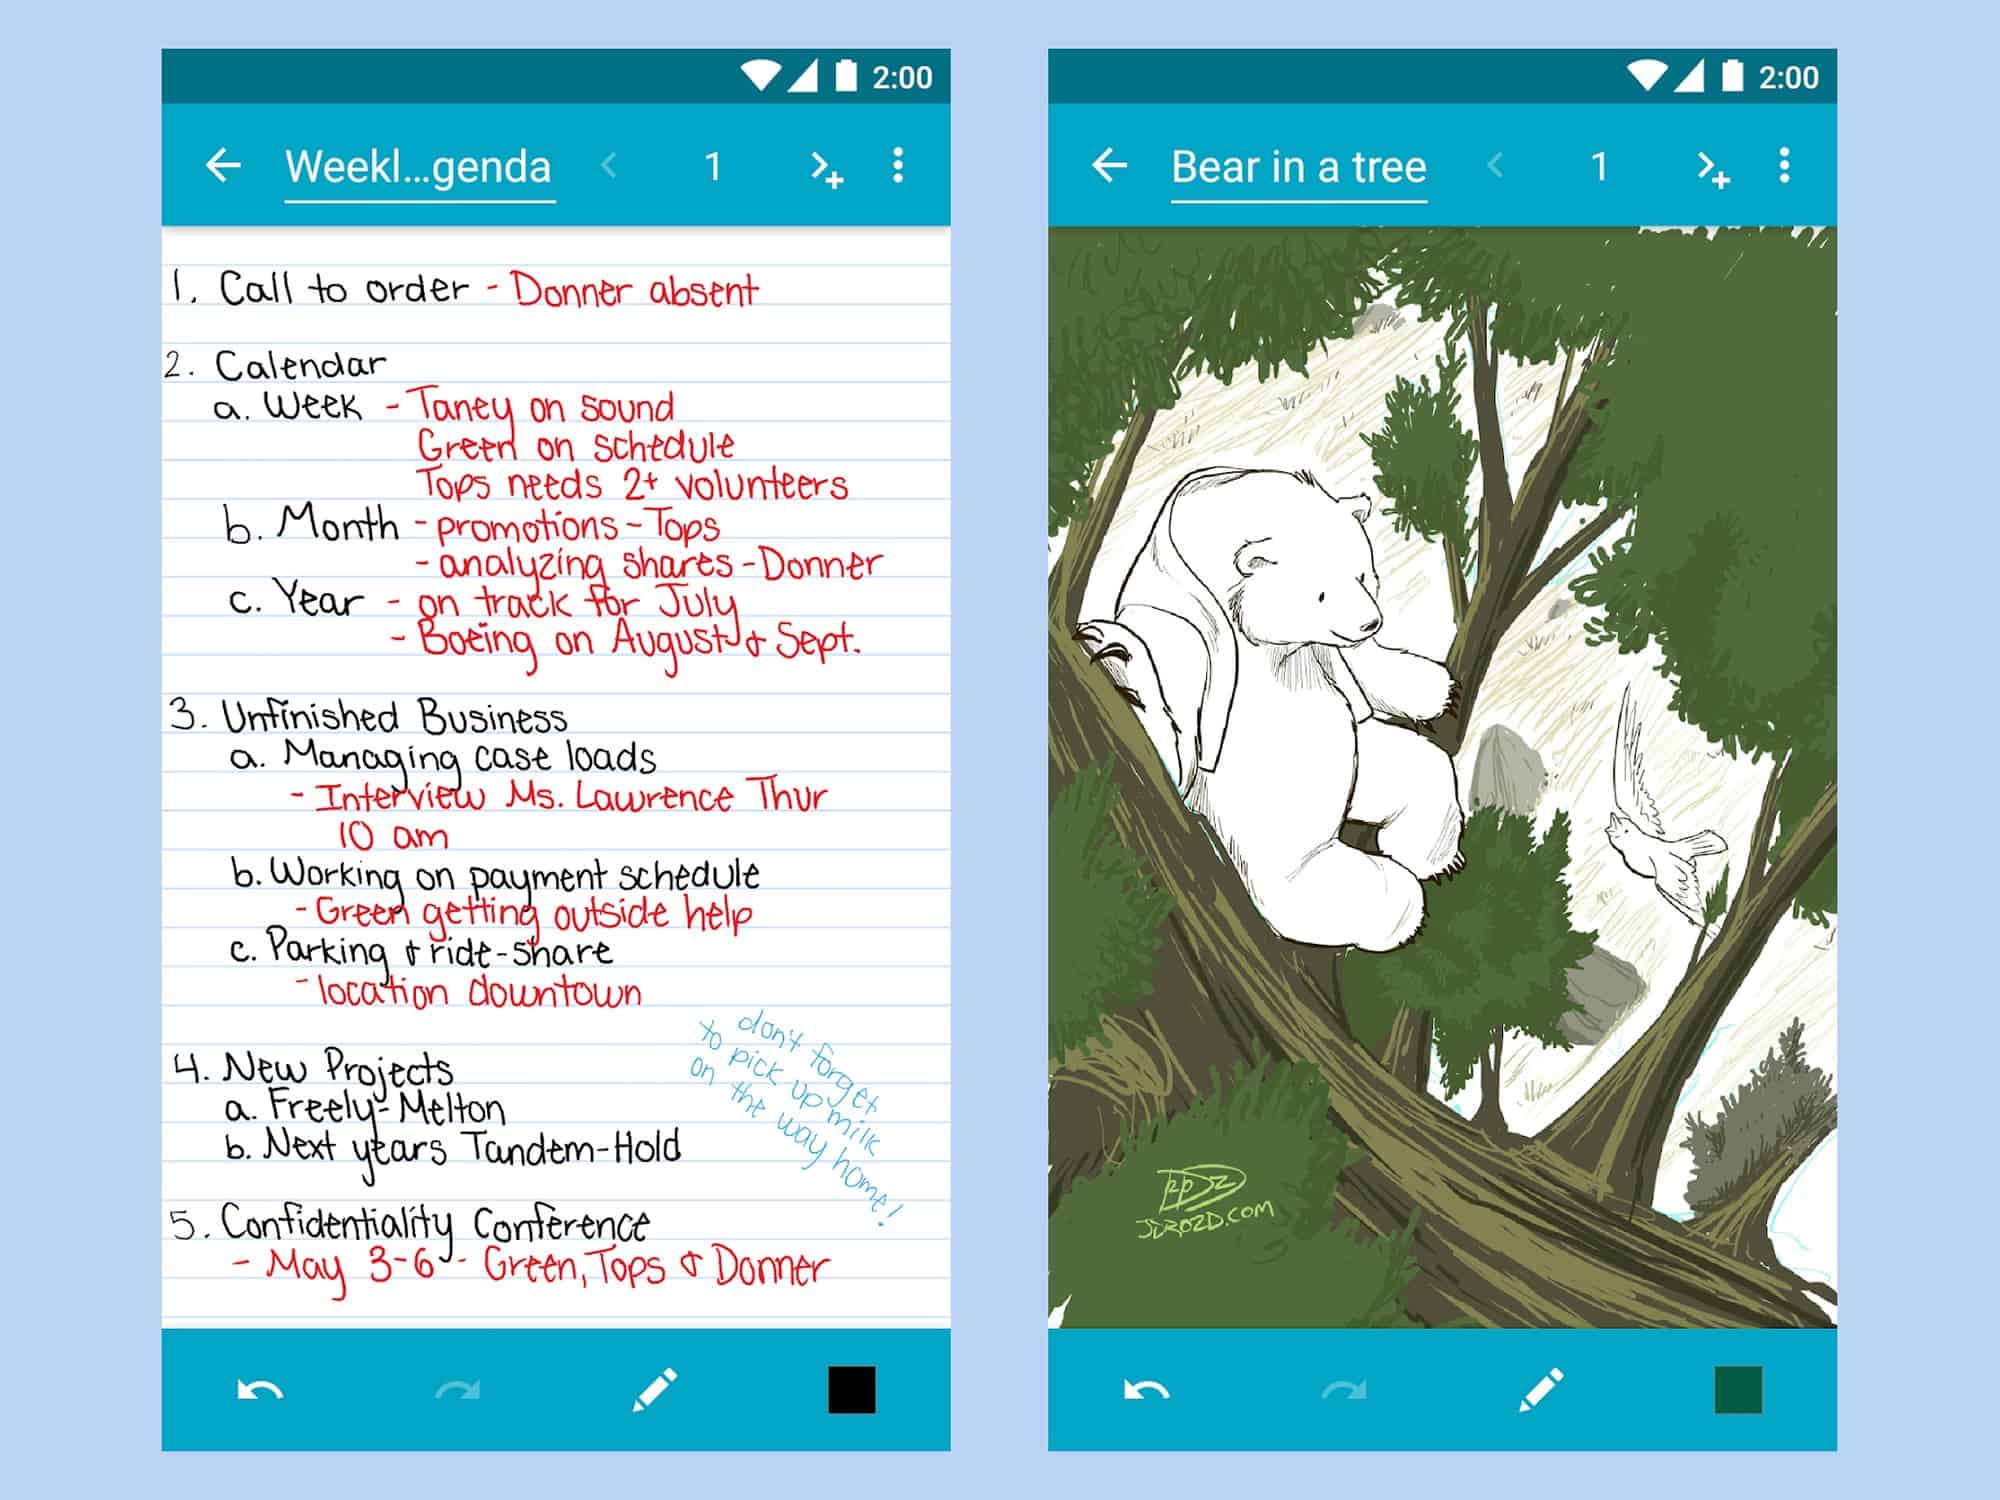 تطبيق سكويد لتدوين الملاحظات كما يظهر على شاشة الهاتف، يعرض ملاحظات مكتوبة بخط اليد بالإضافة إلى رسم تخطيطي